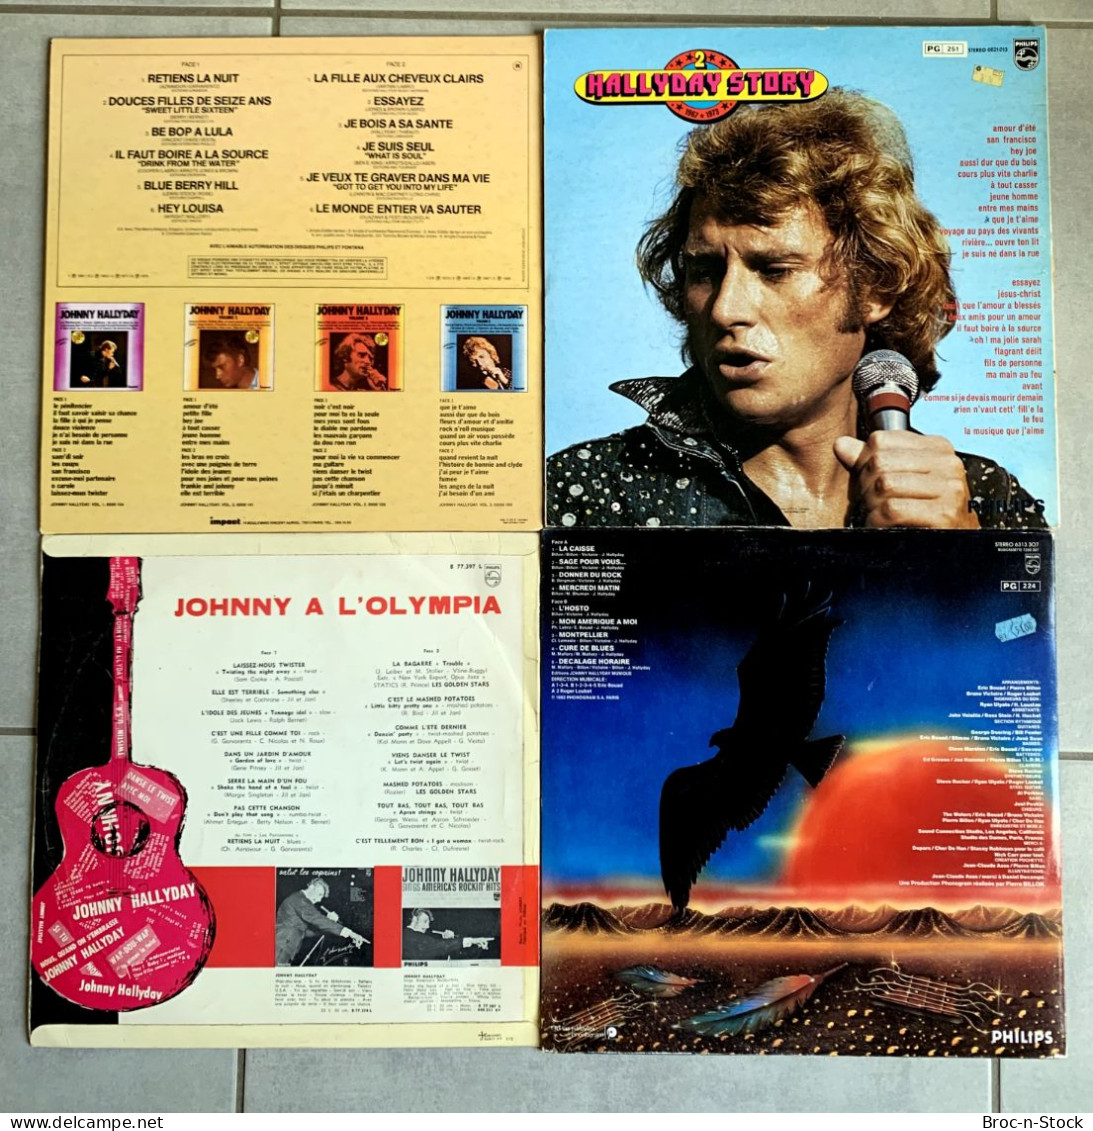 Vinyles 33T - Lot 4 disques de Johnny Hallyday